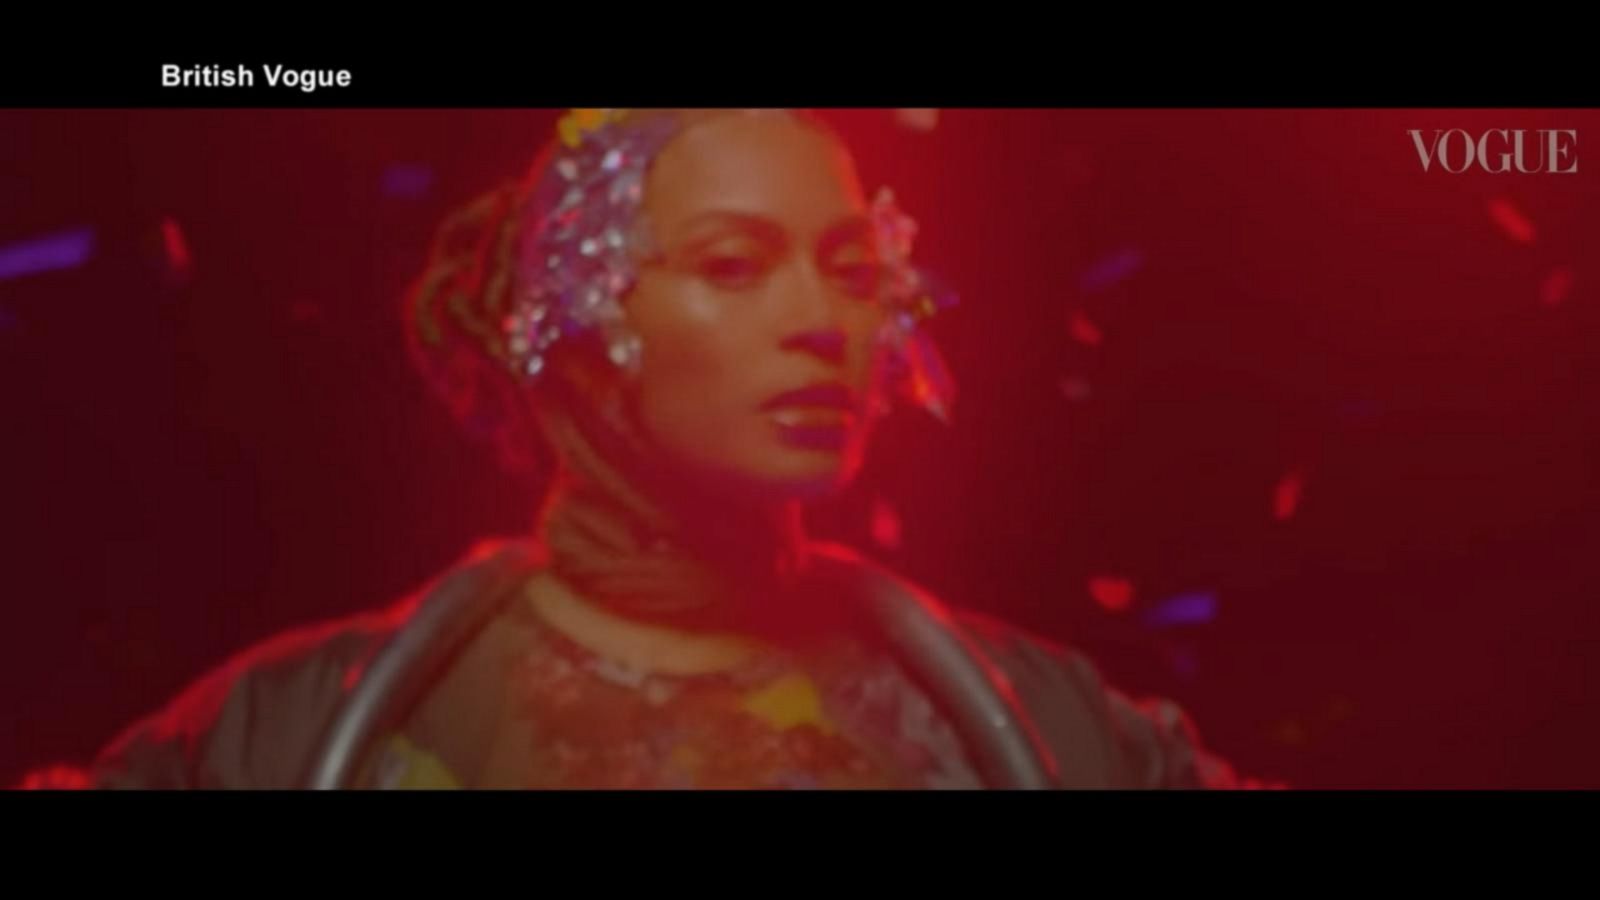 VIDEO: Beyoncé lands 9 Grammy nominations for ‘Renaissance’